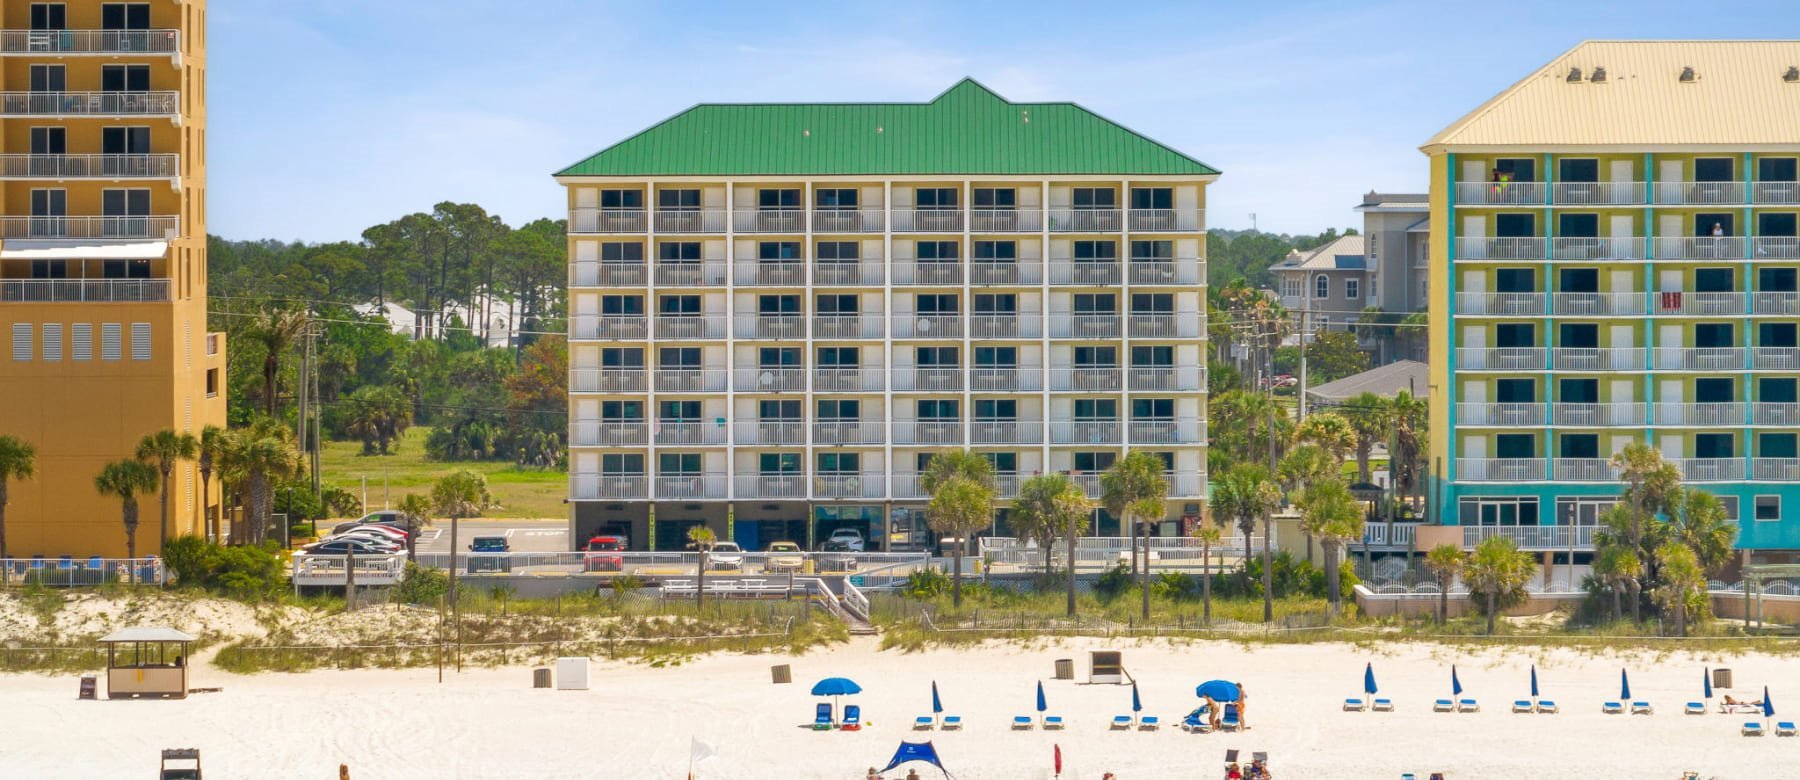 Beach Tower Beachfront Hotel, Florida